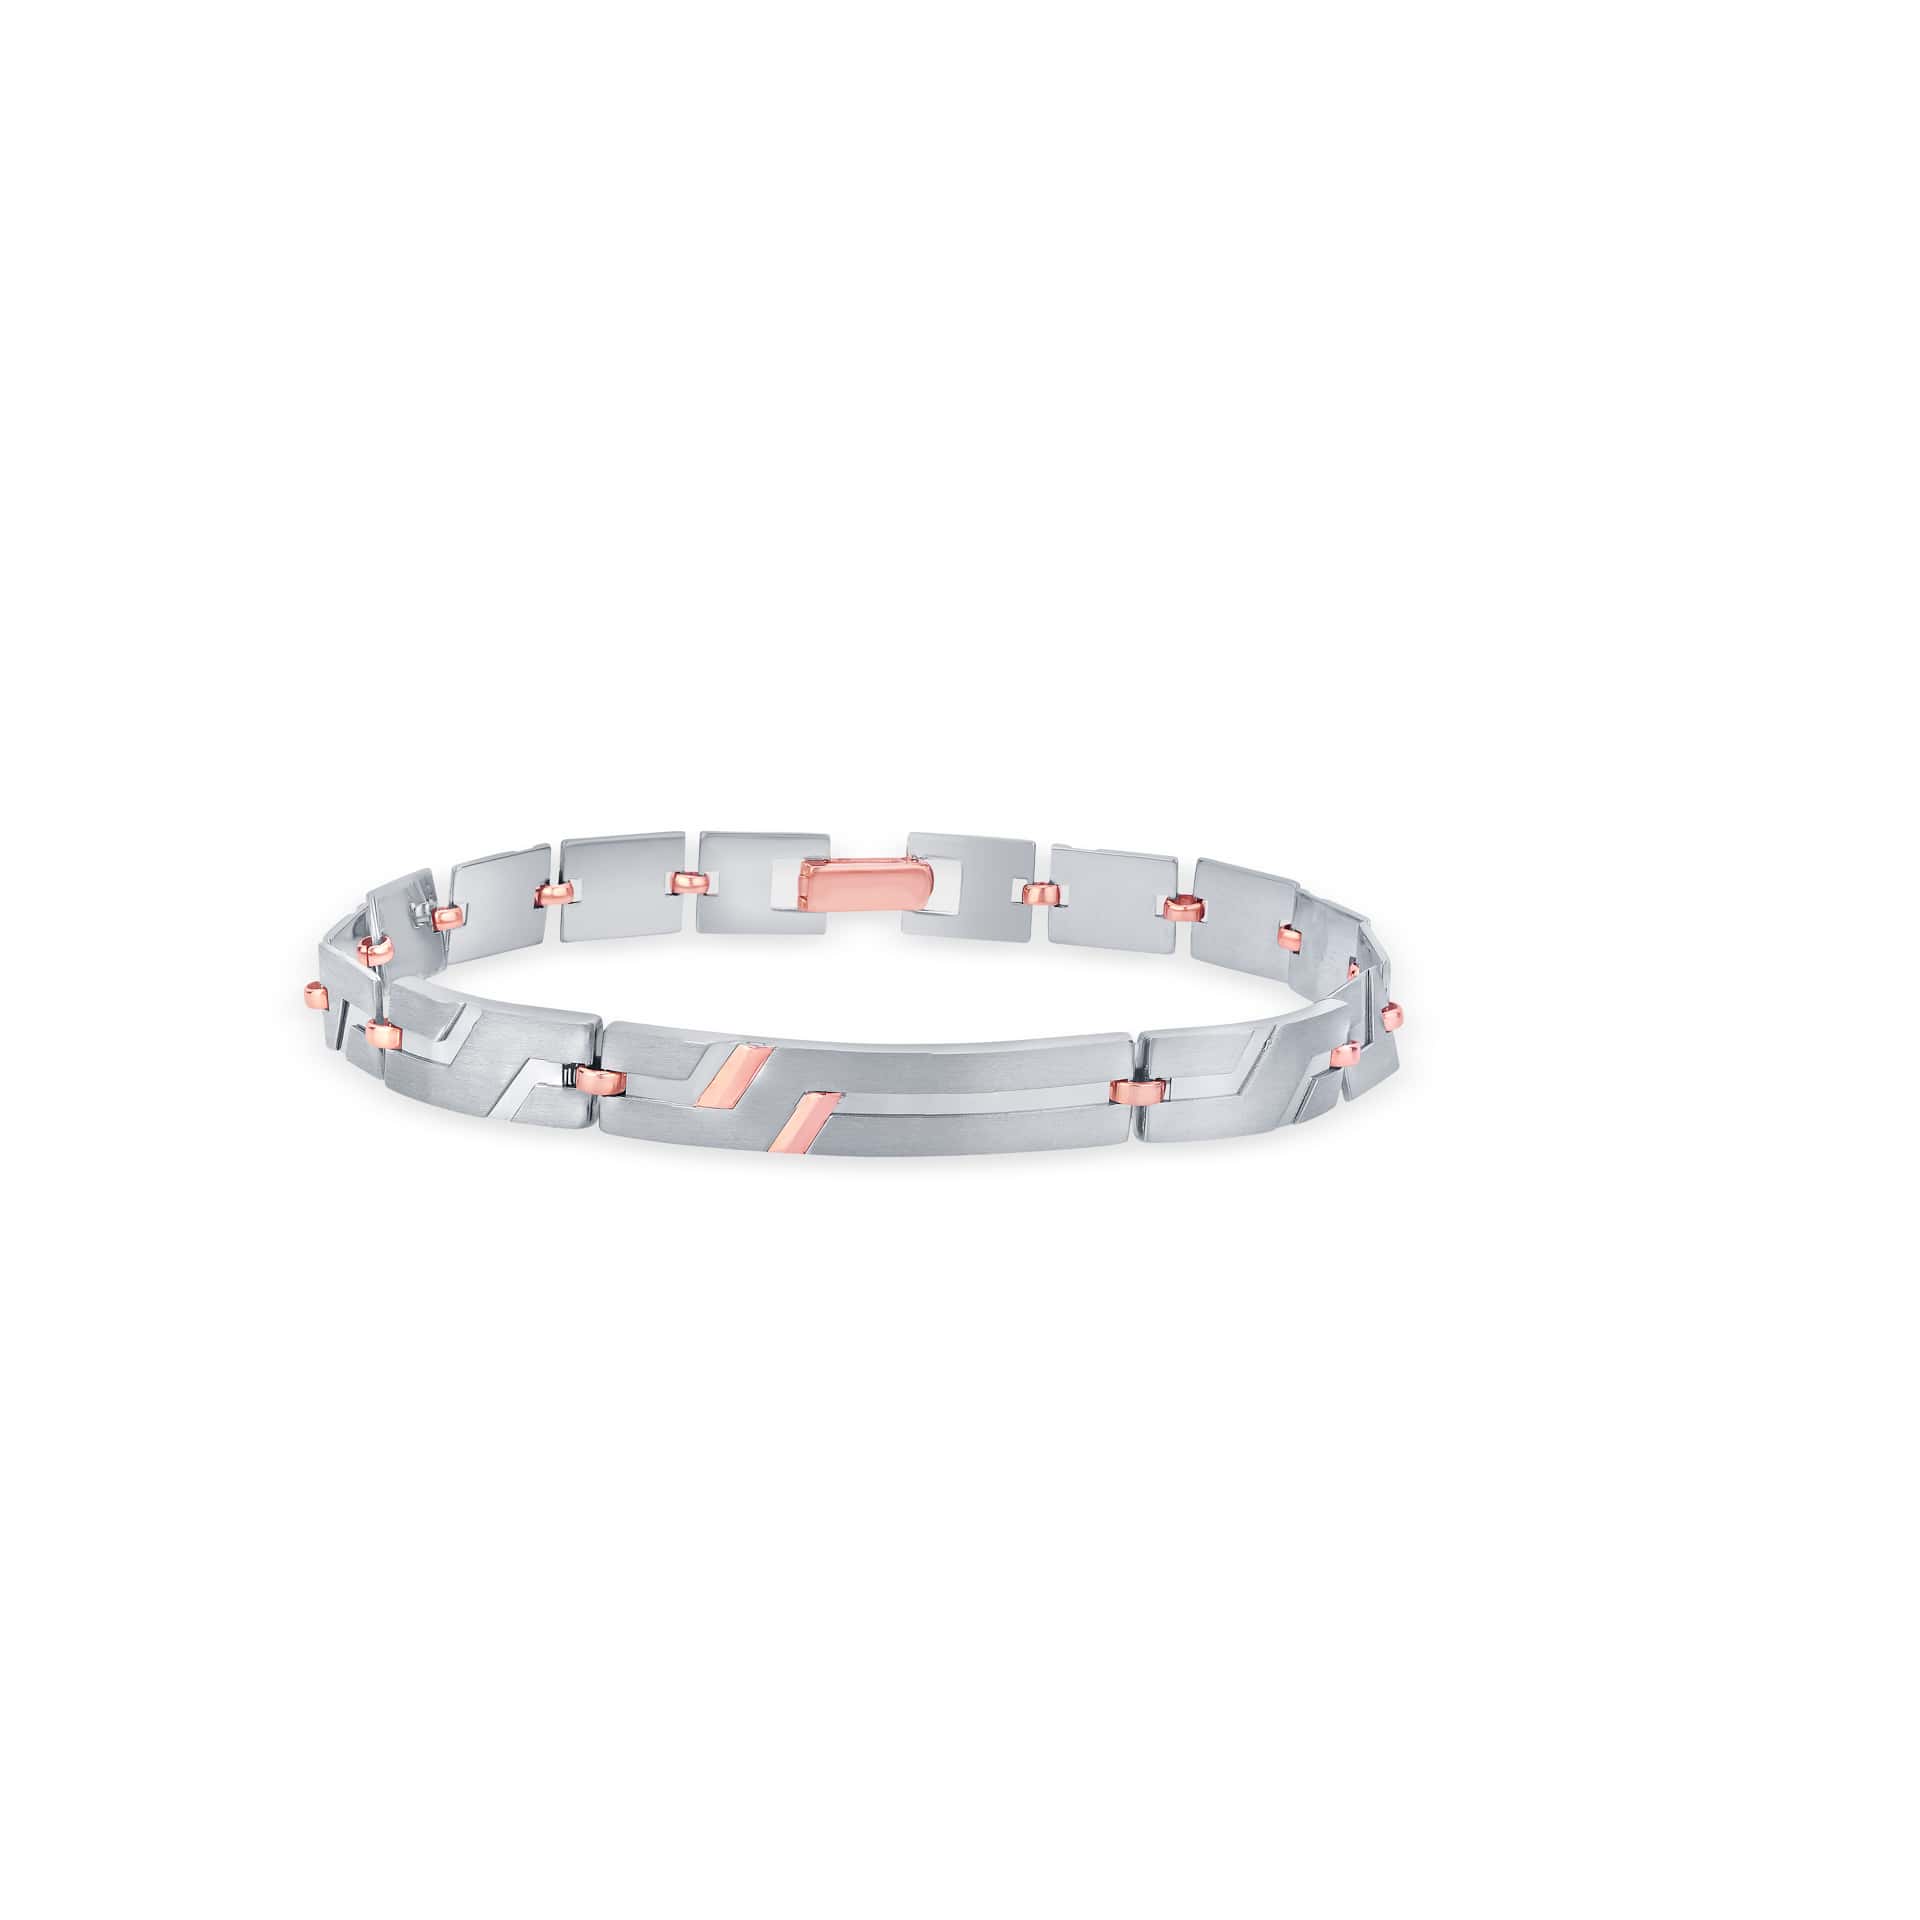 ORRA Diamond Bracelet | Jewelry, Bracelets, Gold bracelet